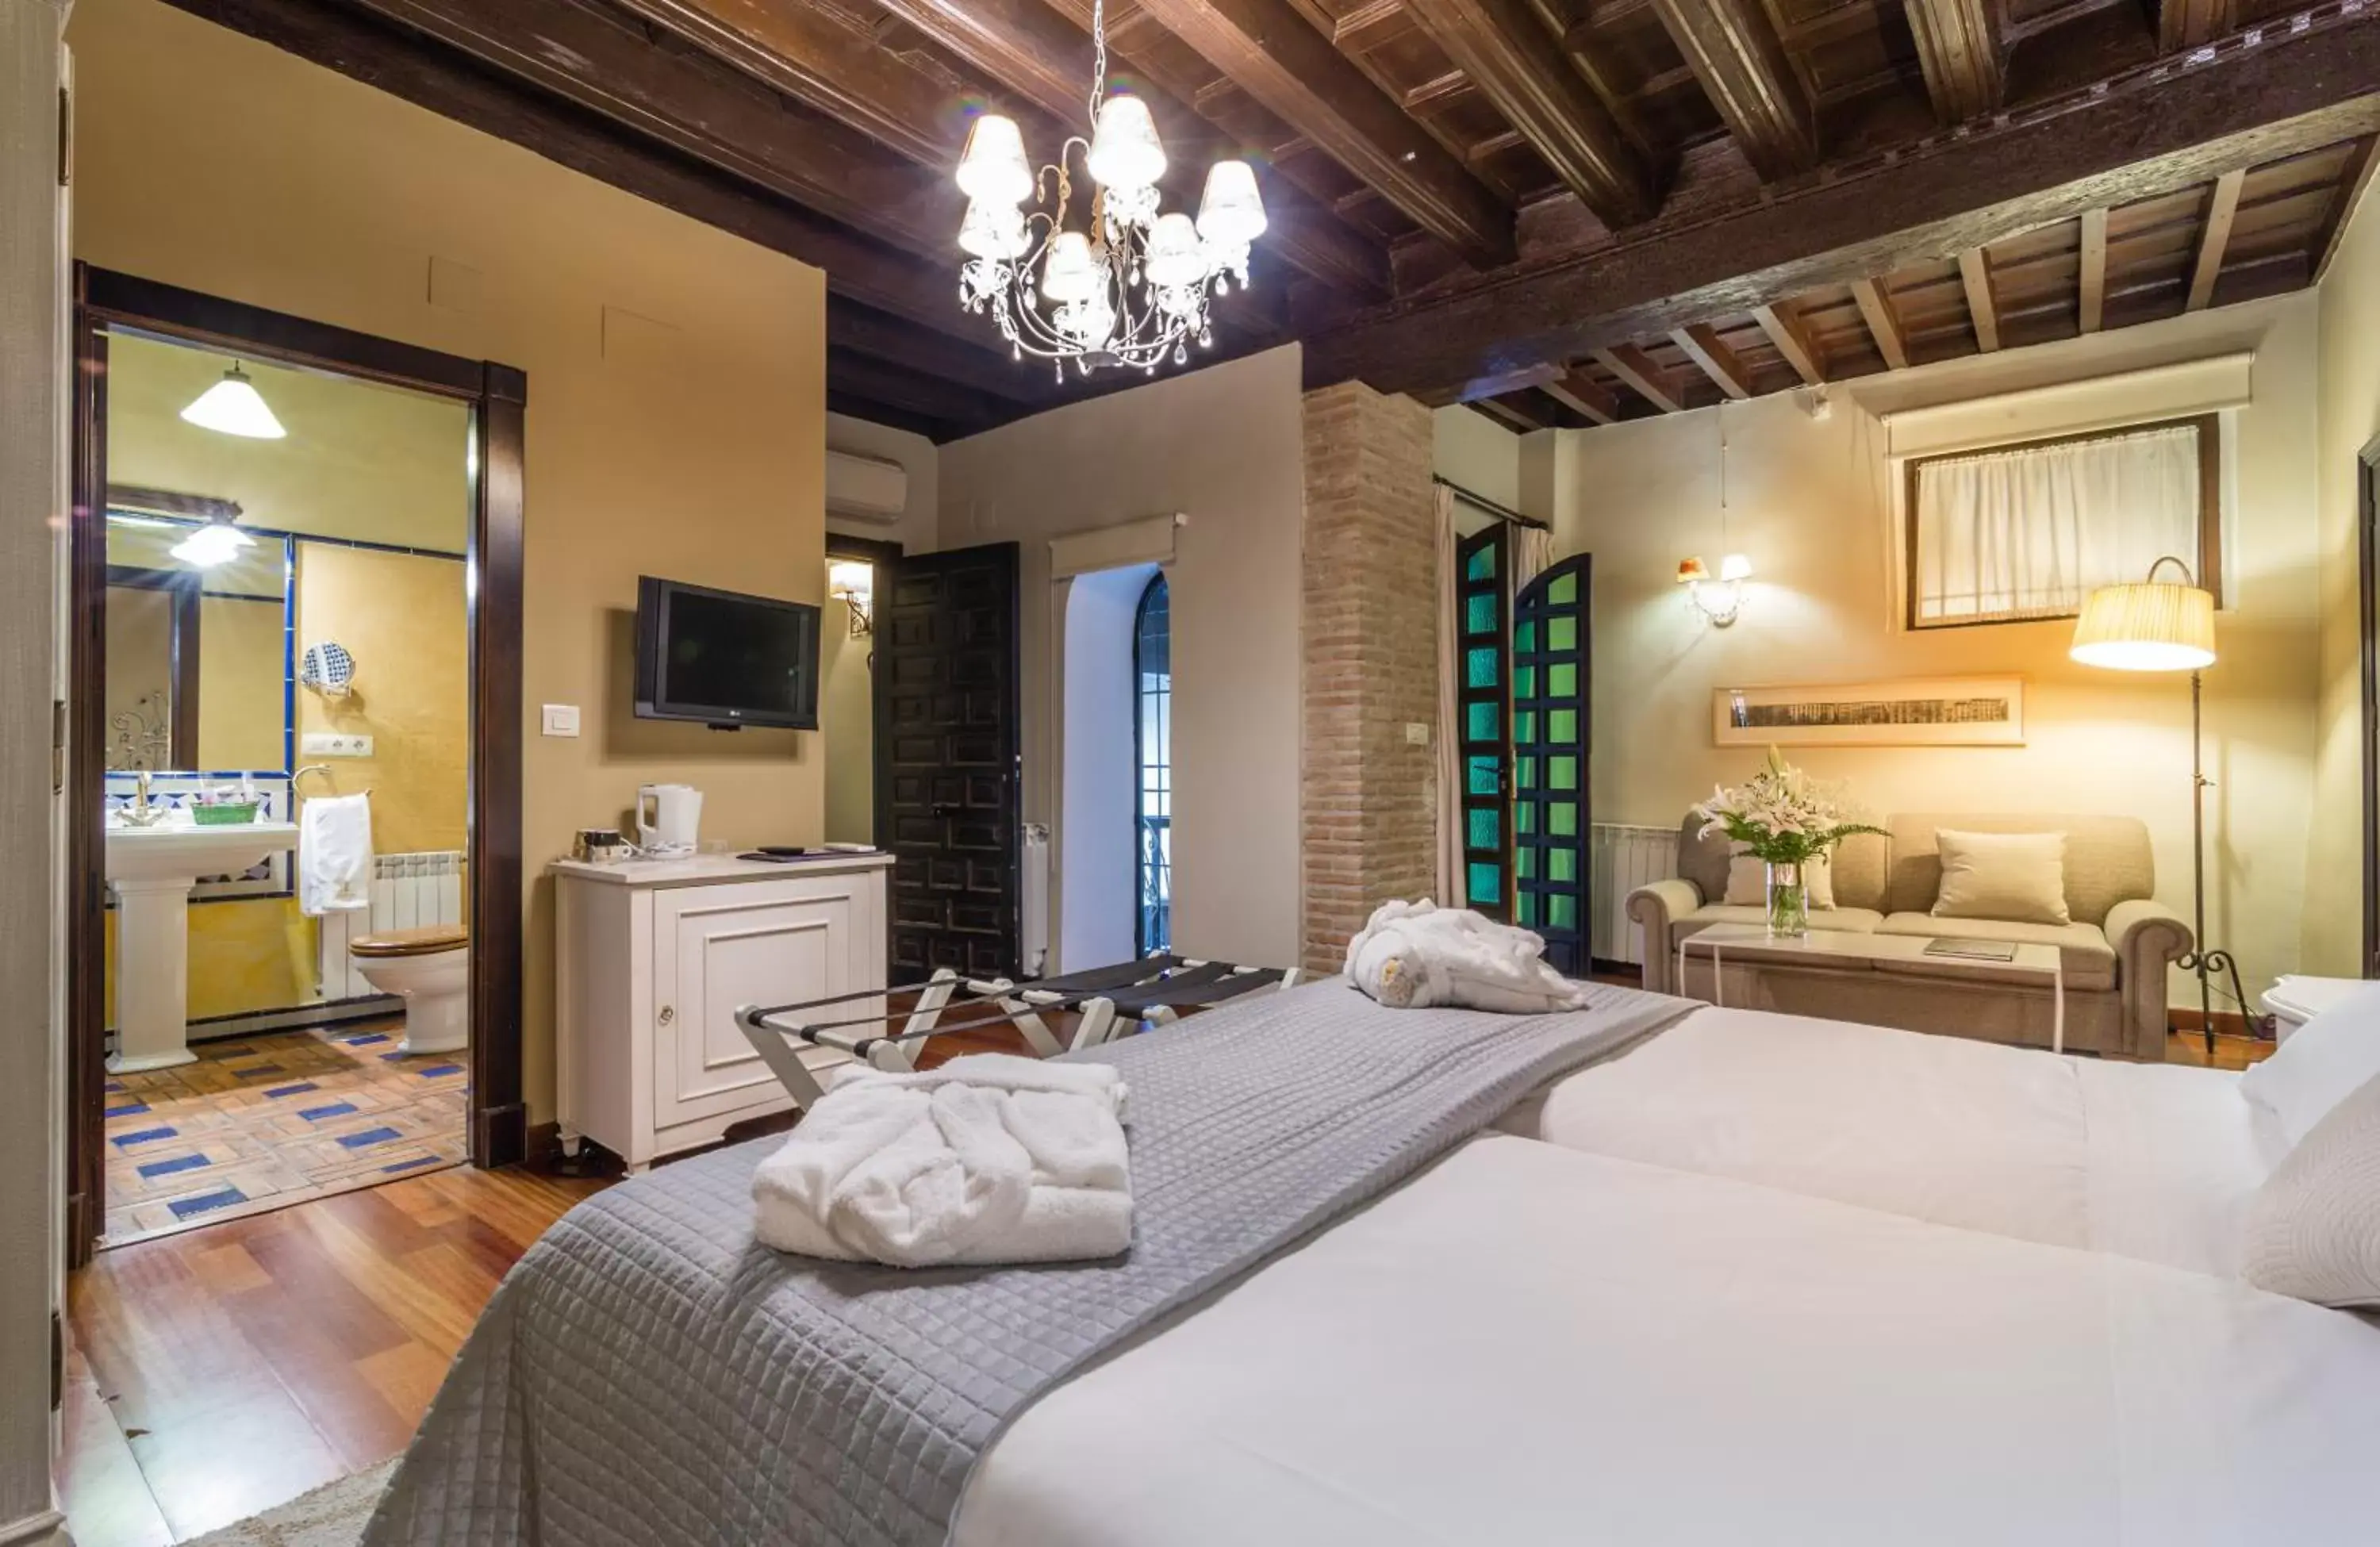 Bedroom, Bed in Palacio de Mariana Pineda